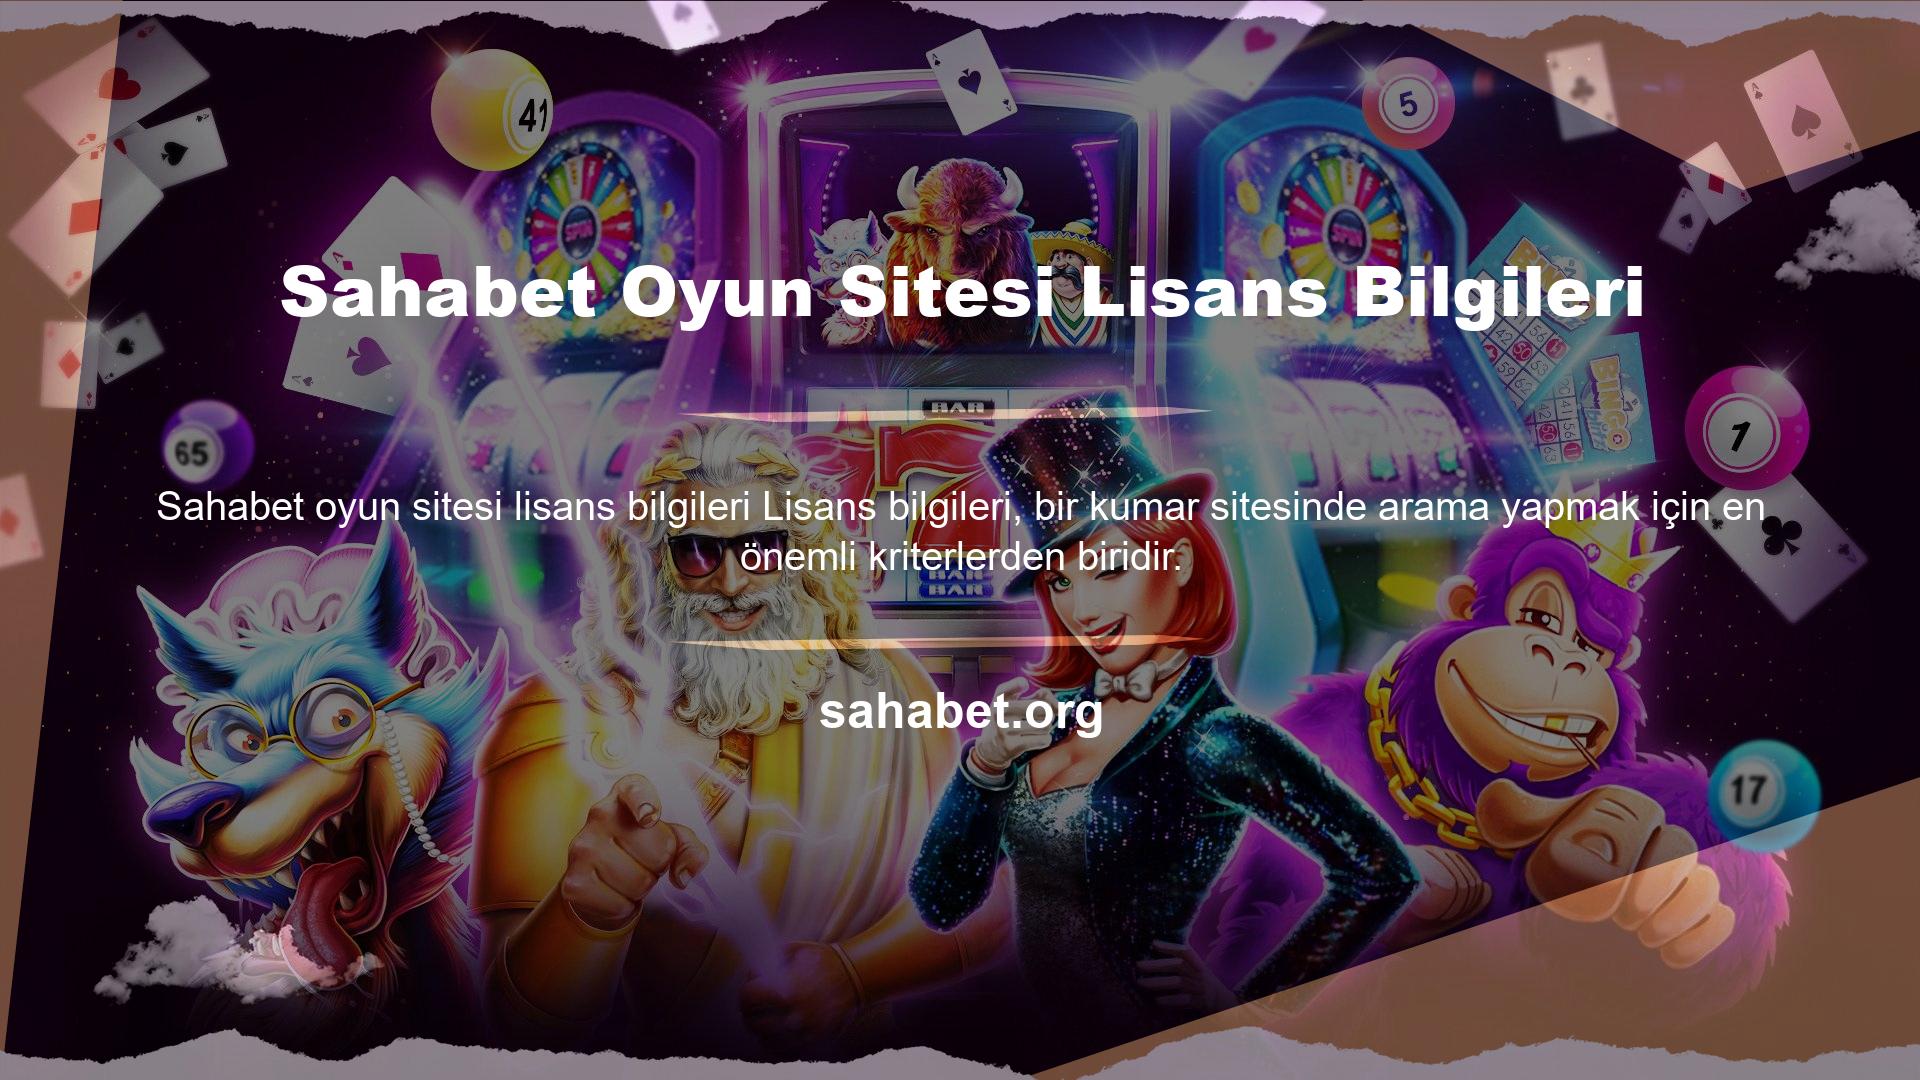 Sahabet Oyun Sitesi Lisans Bilgileri Türkiye'de resmi olarak kumar hizmeti sunan sınırlı sayıda web sitesi vardır